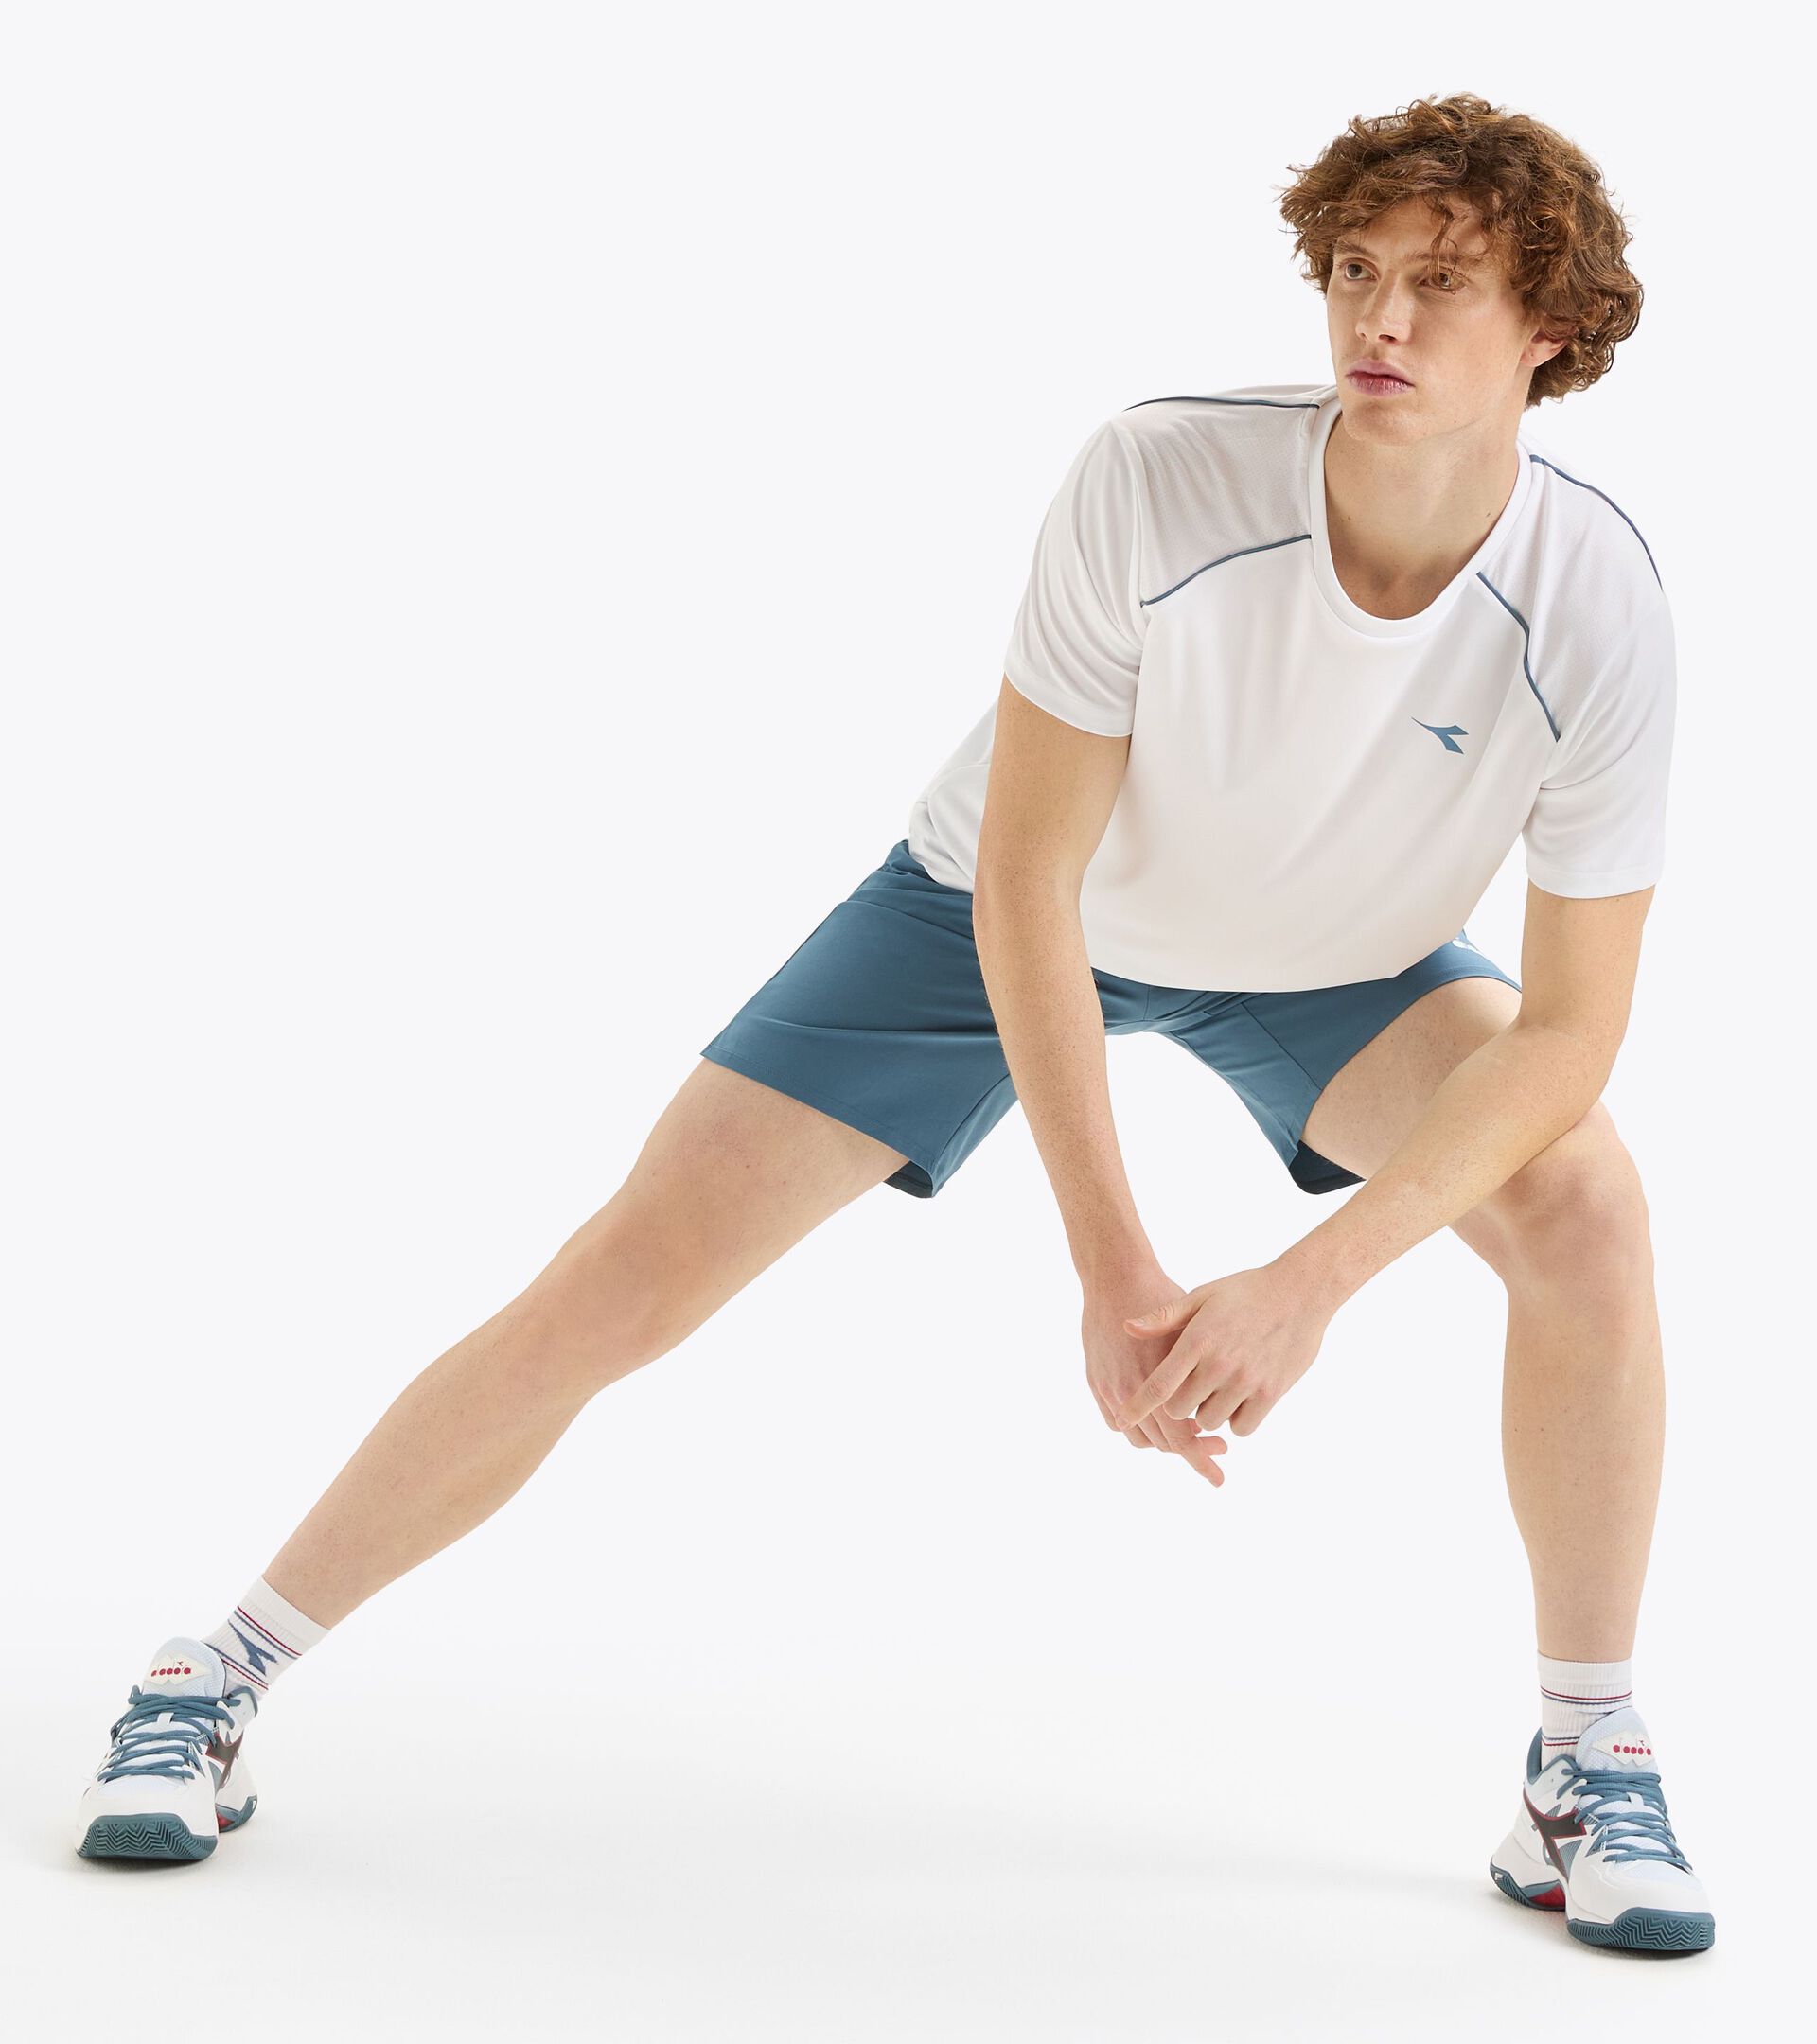 Pantalones cortos de tenis 9’’ - Hombre
 SHORTS CORE 9" OCEANVIEW - Diadora